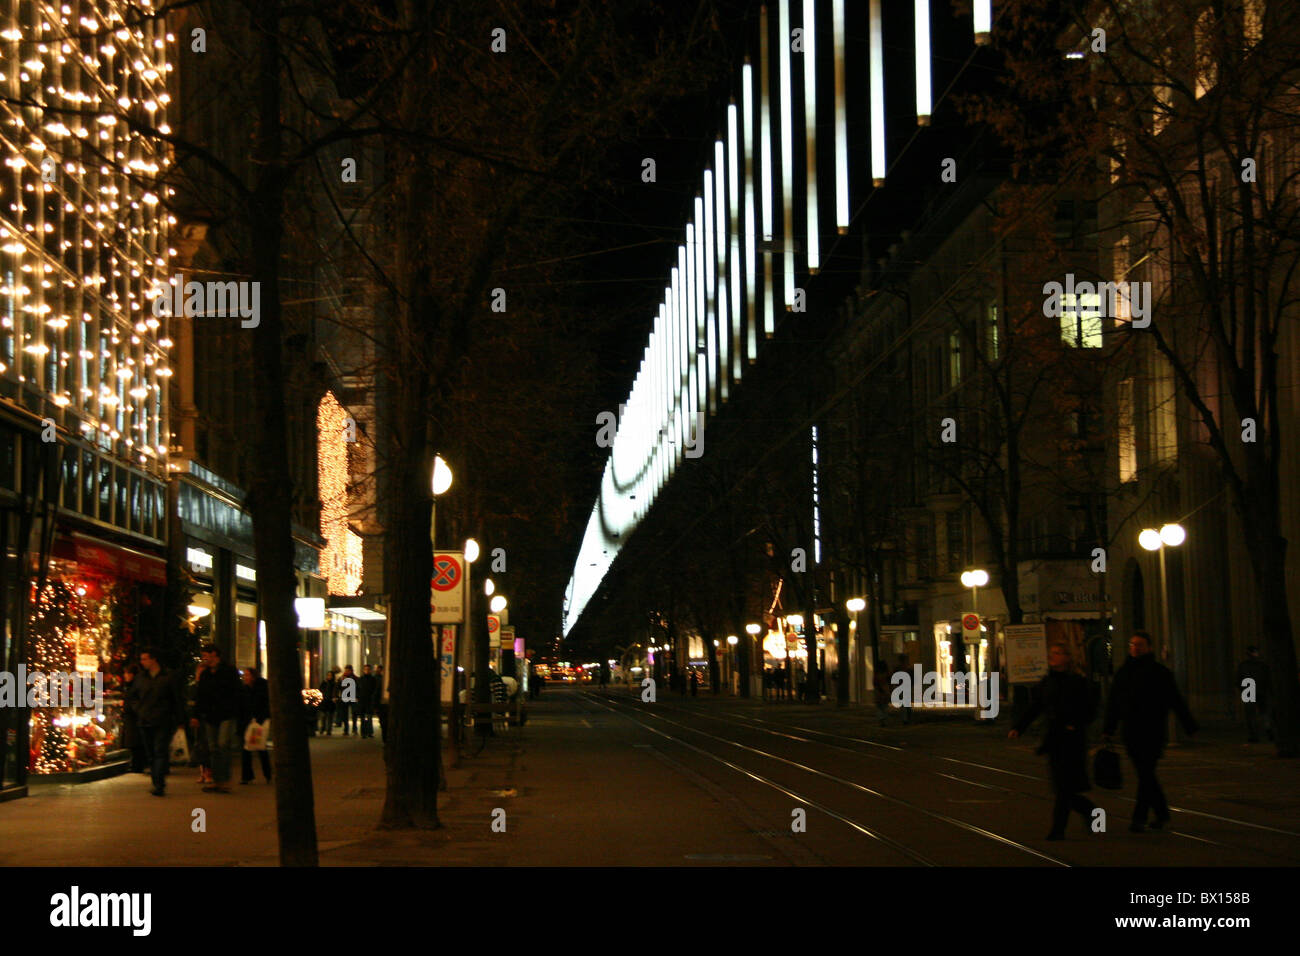 Stadt Zürich Weihnachten Bahnhofstrasse bei Nacht Nacht Business Handel  Shops einkaufen Person Beleuchtung Stockfotografie - Alamy